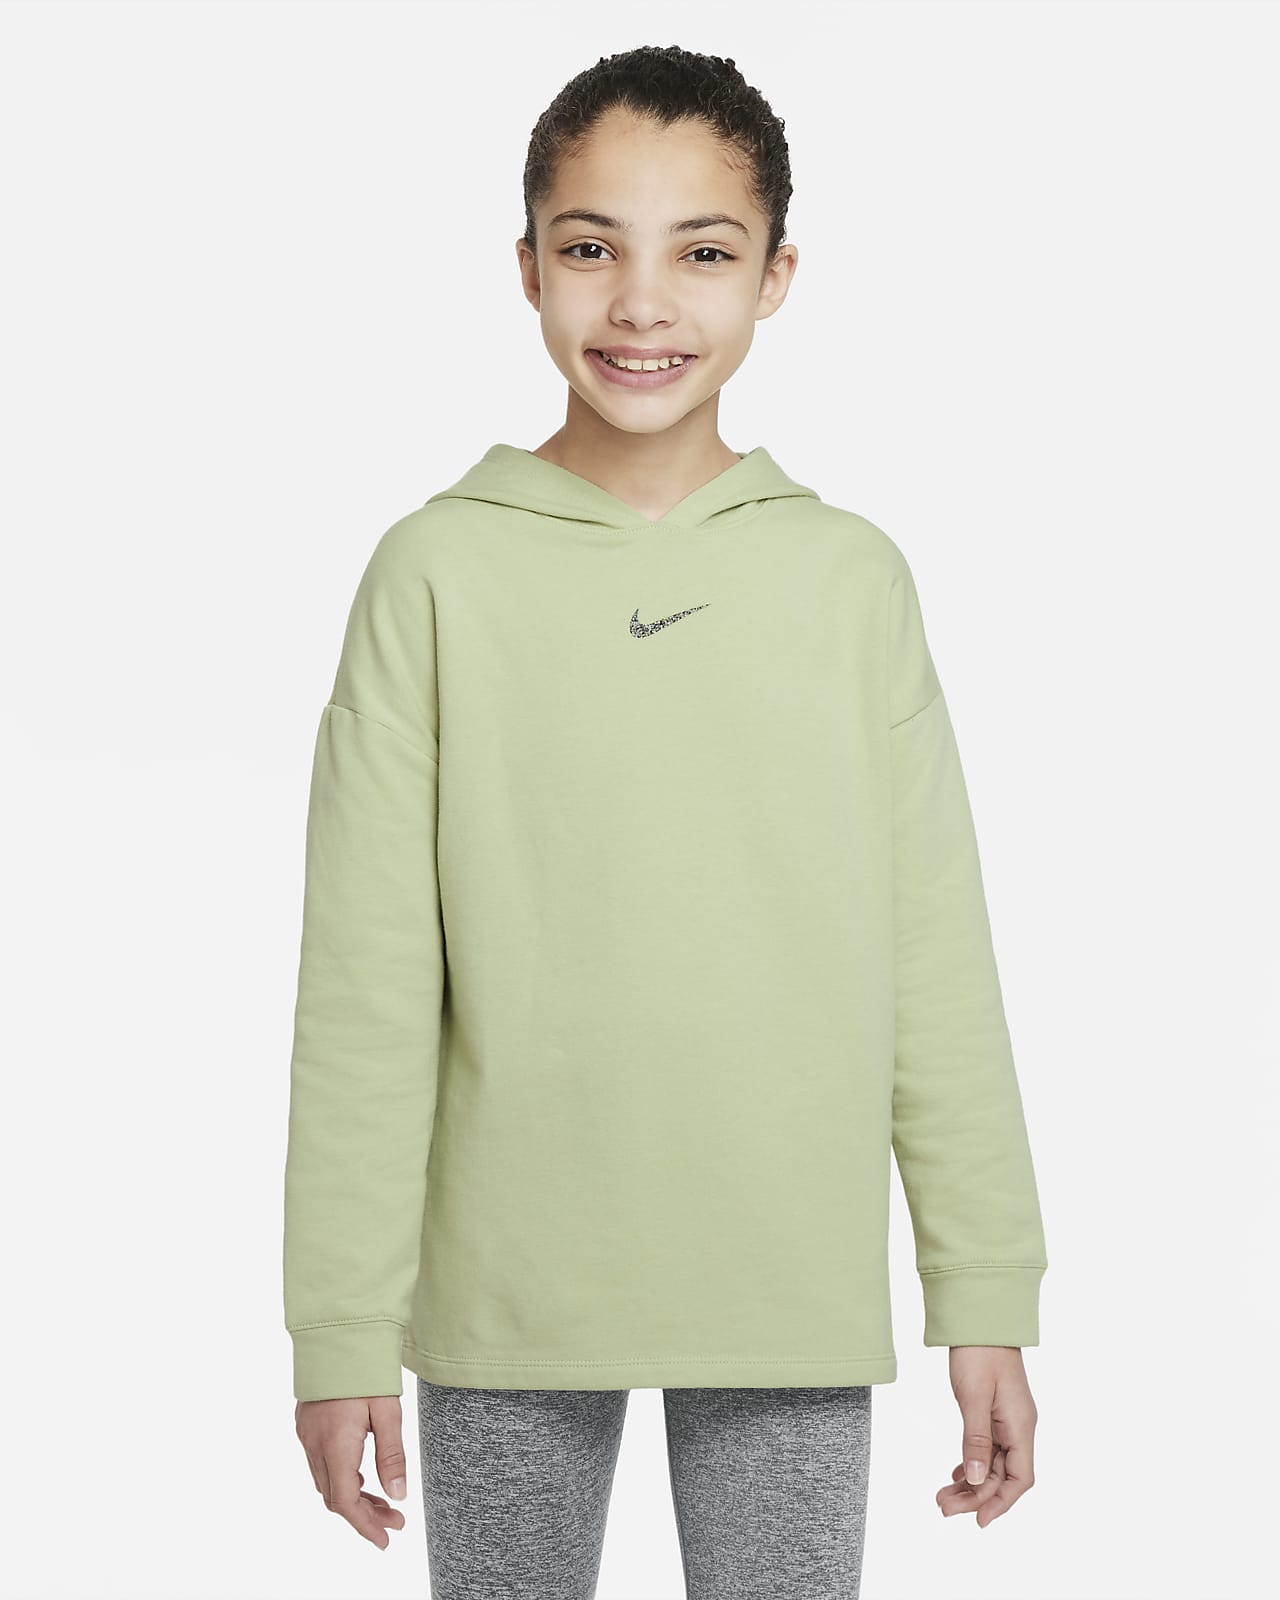 Flísová mikina Nike Yoga pro větší děti (dívky)